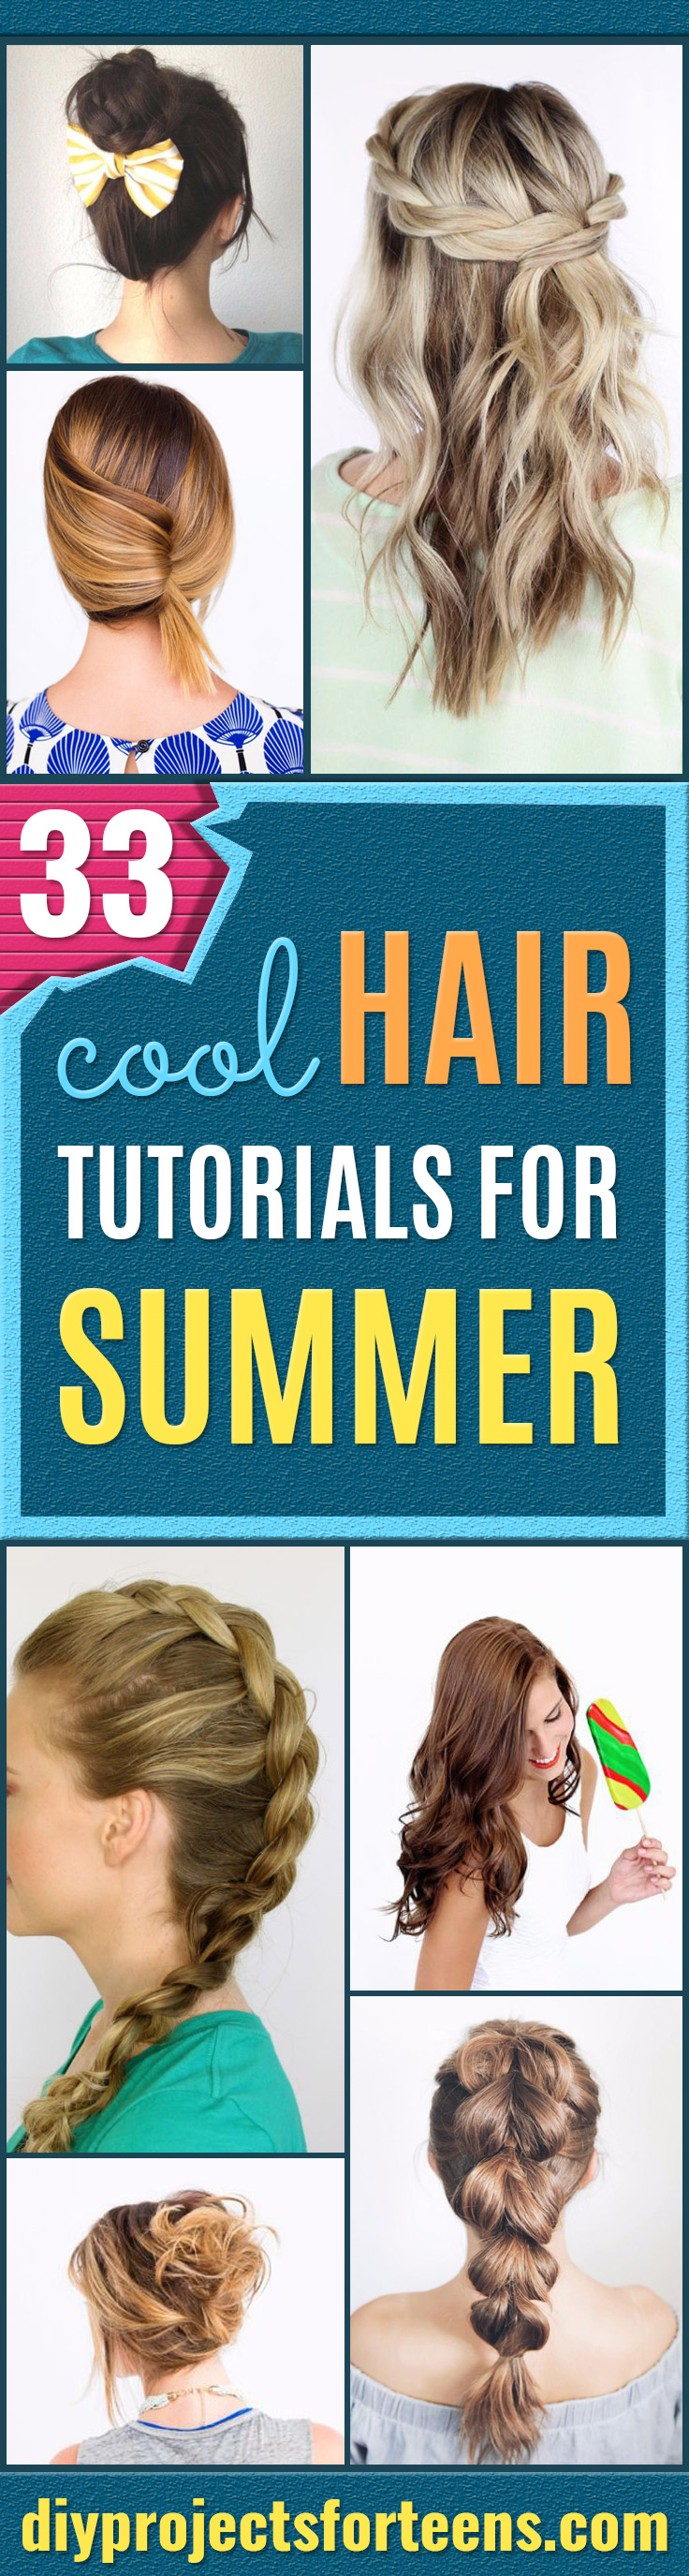 33 Coole Haar Tutorials für den Sommer 